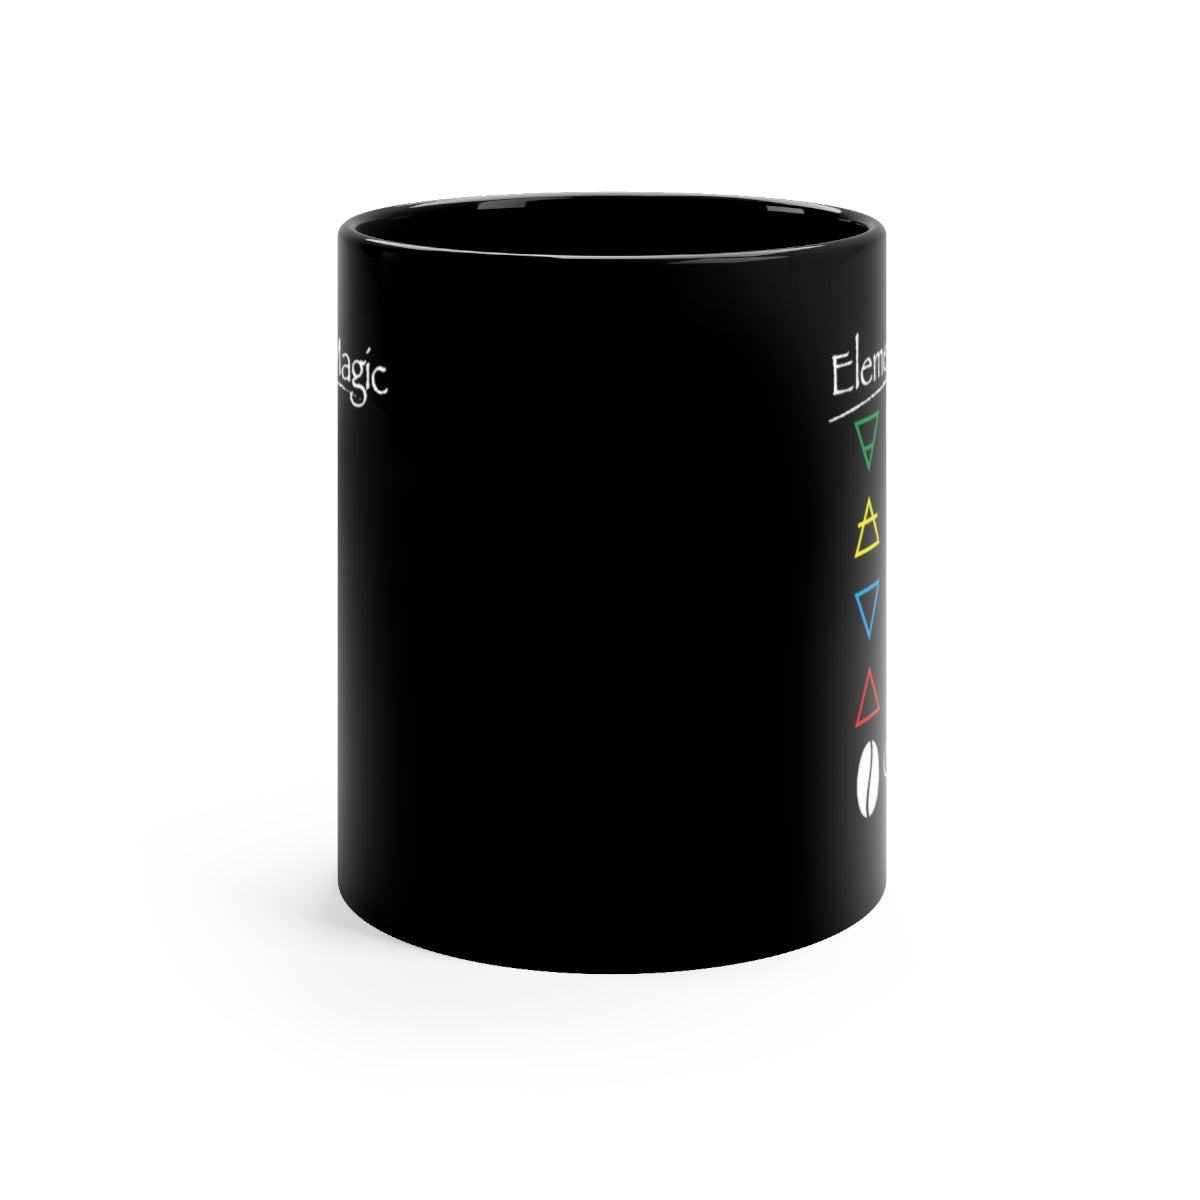 Coffee Magic Black mug 11oz - Elemental Magic coffee mug